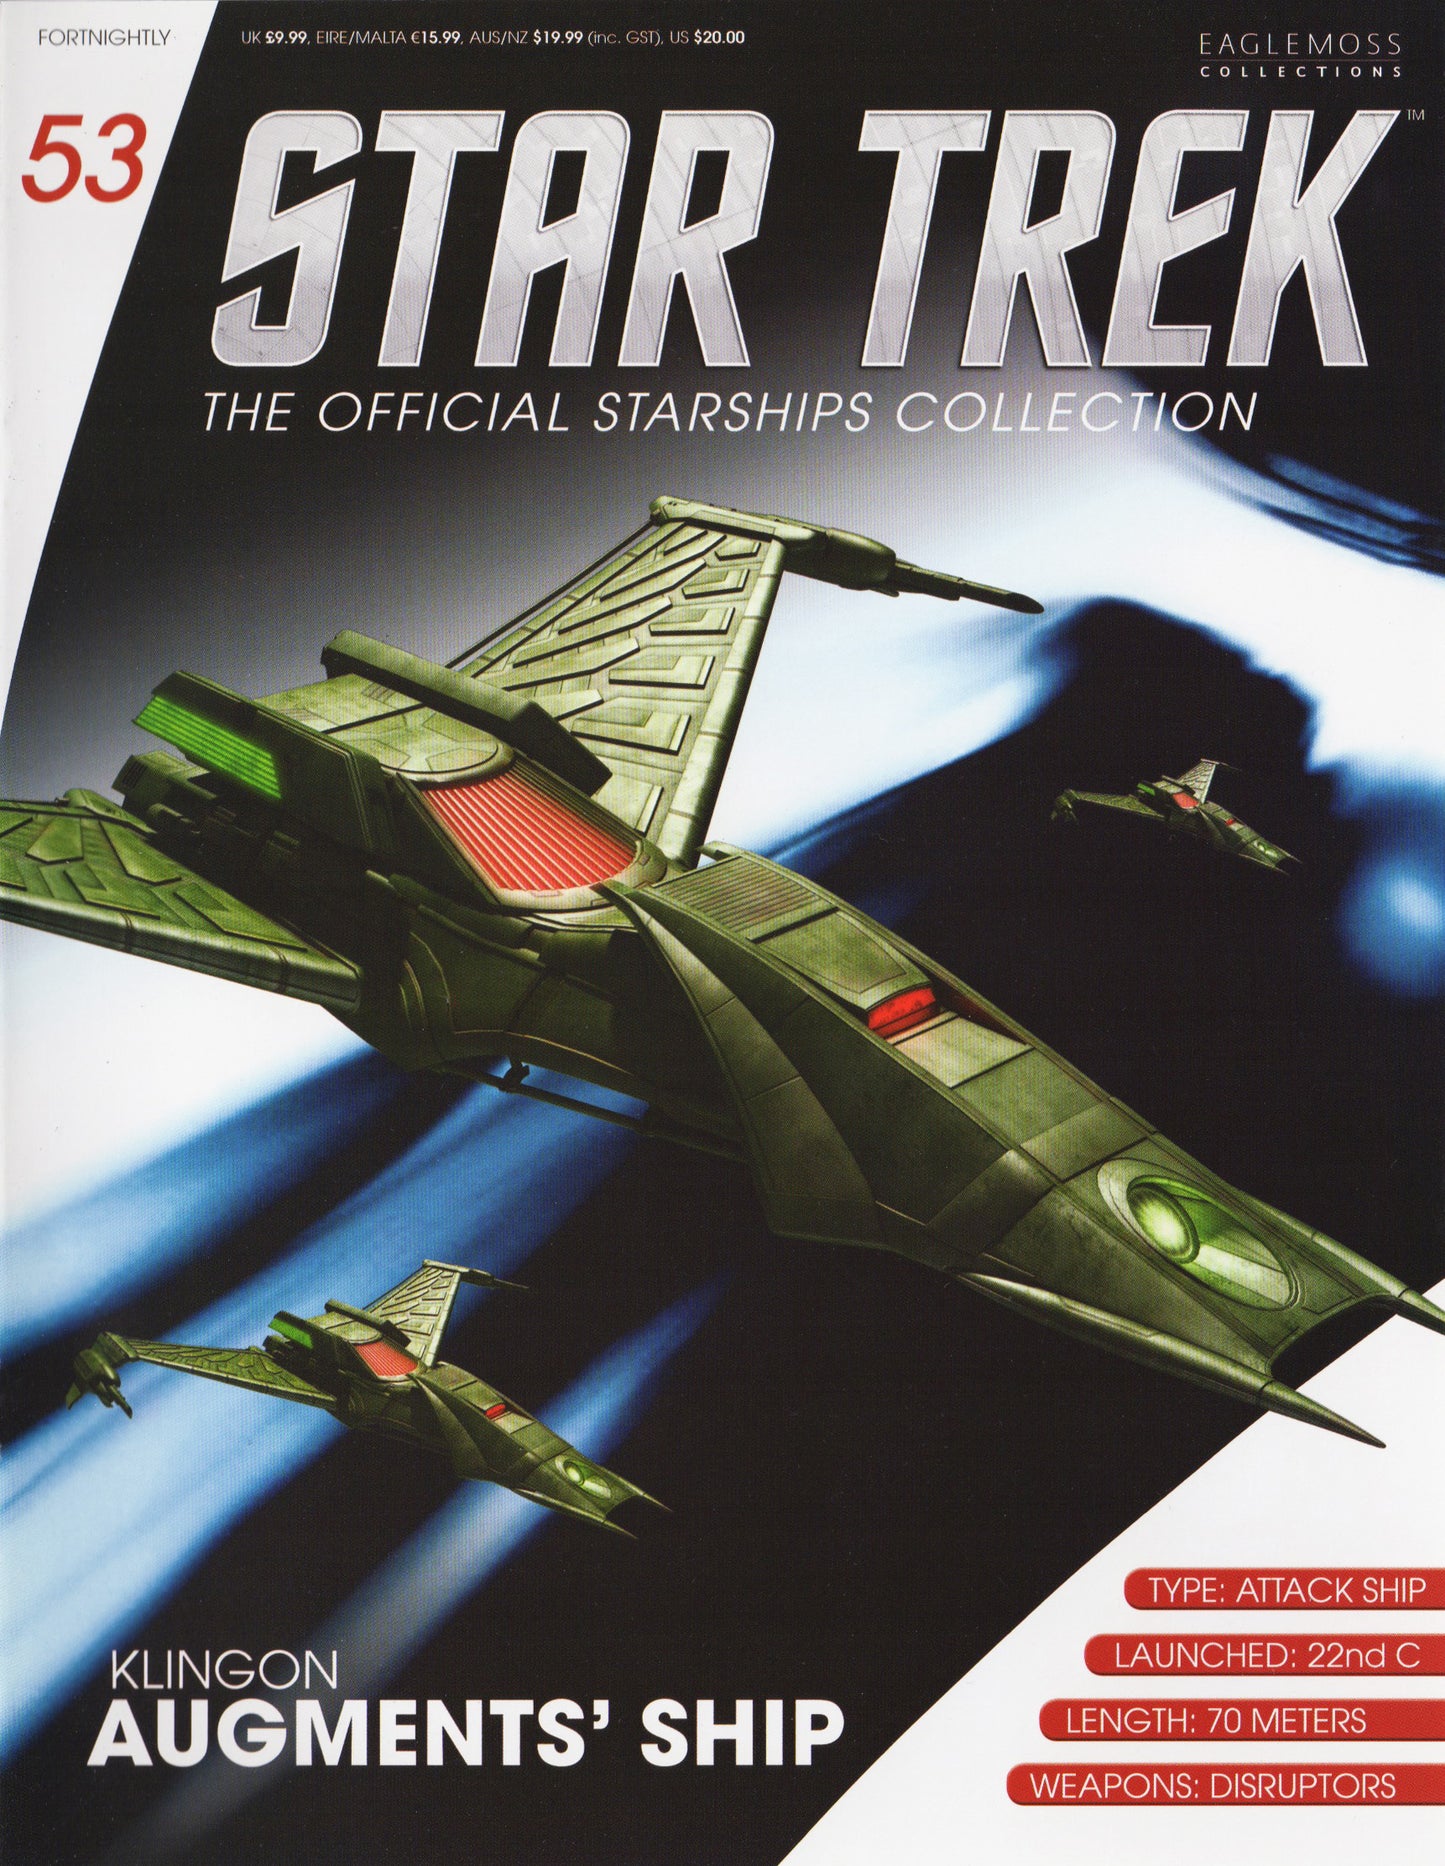 Modèle moulé sous pression du vaisseau spatial Eaglemoss STAR TREK Klingon Augments (numéro 53)